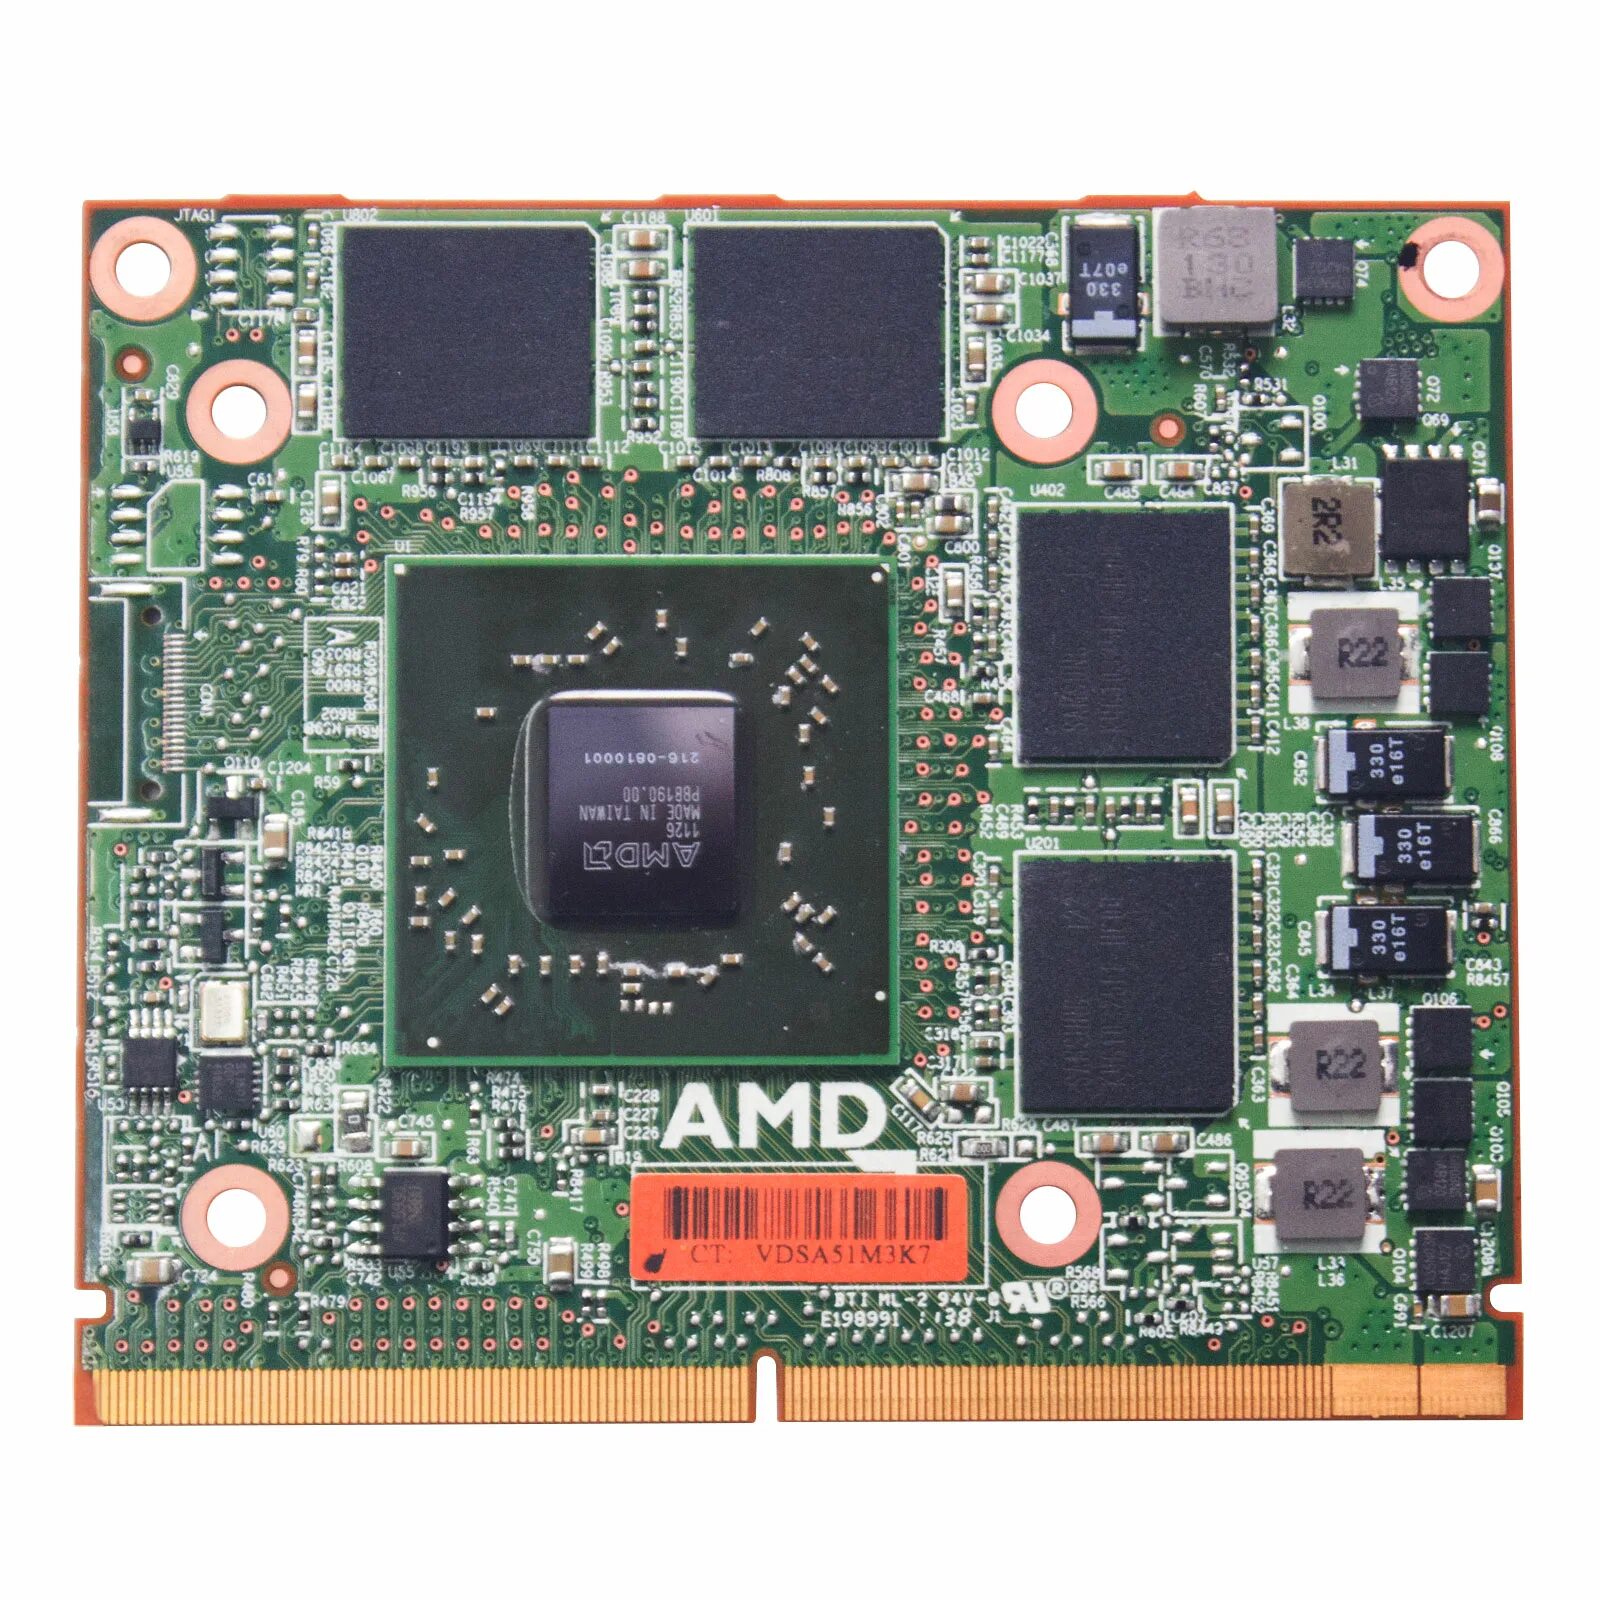 Radeon 610m. Видеокарта AMD Radeon HD 6770. Видеочип AMD Radeon HD 6770. 6770m видеокарта для ноутбука. Видеокарта MXM для HP.